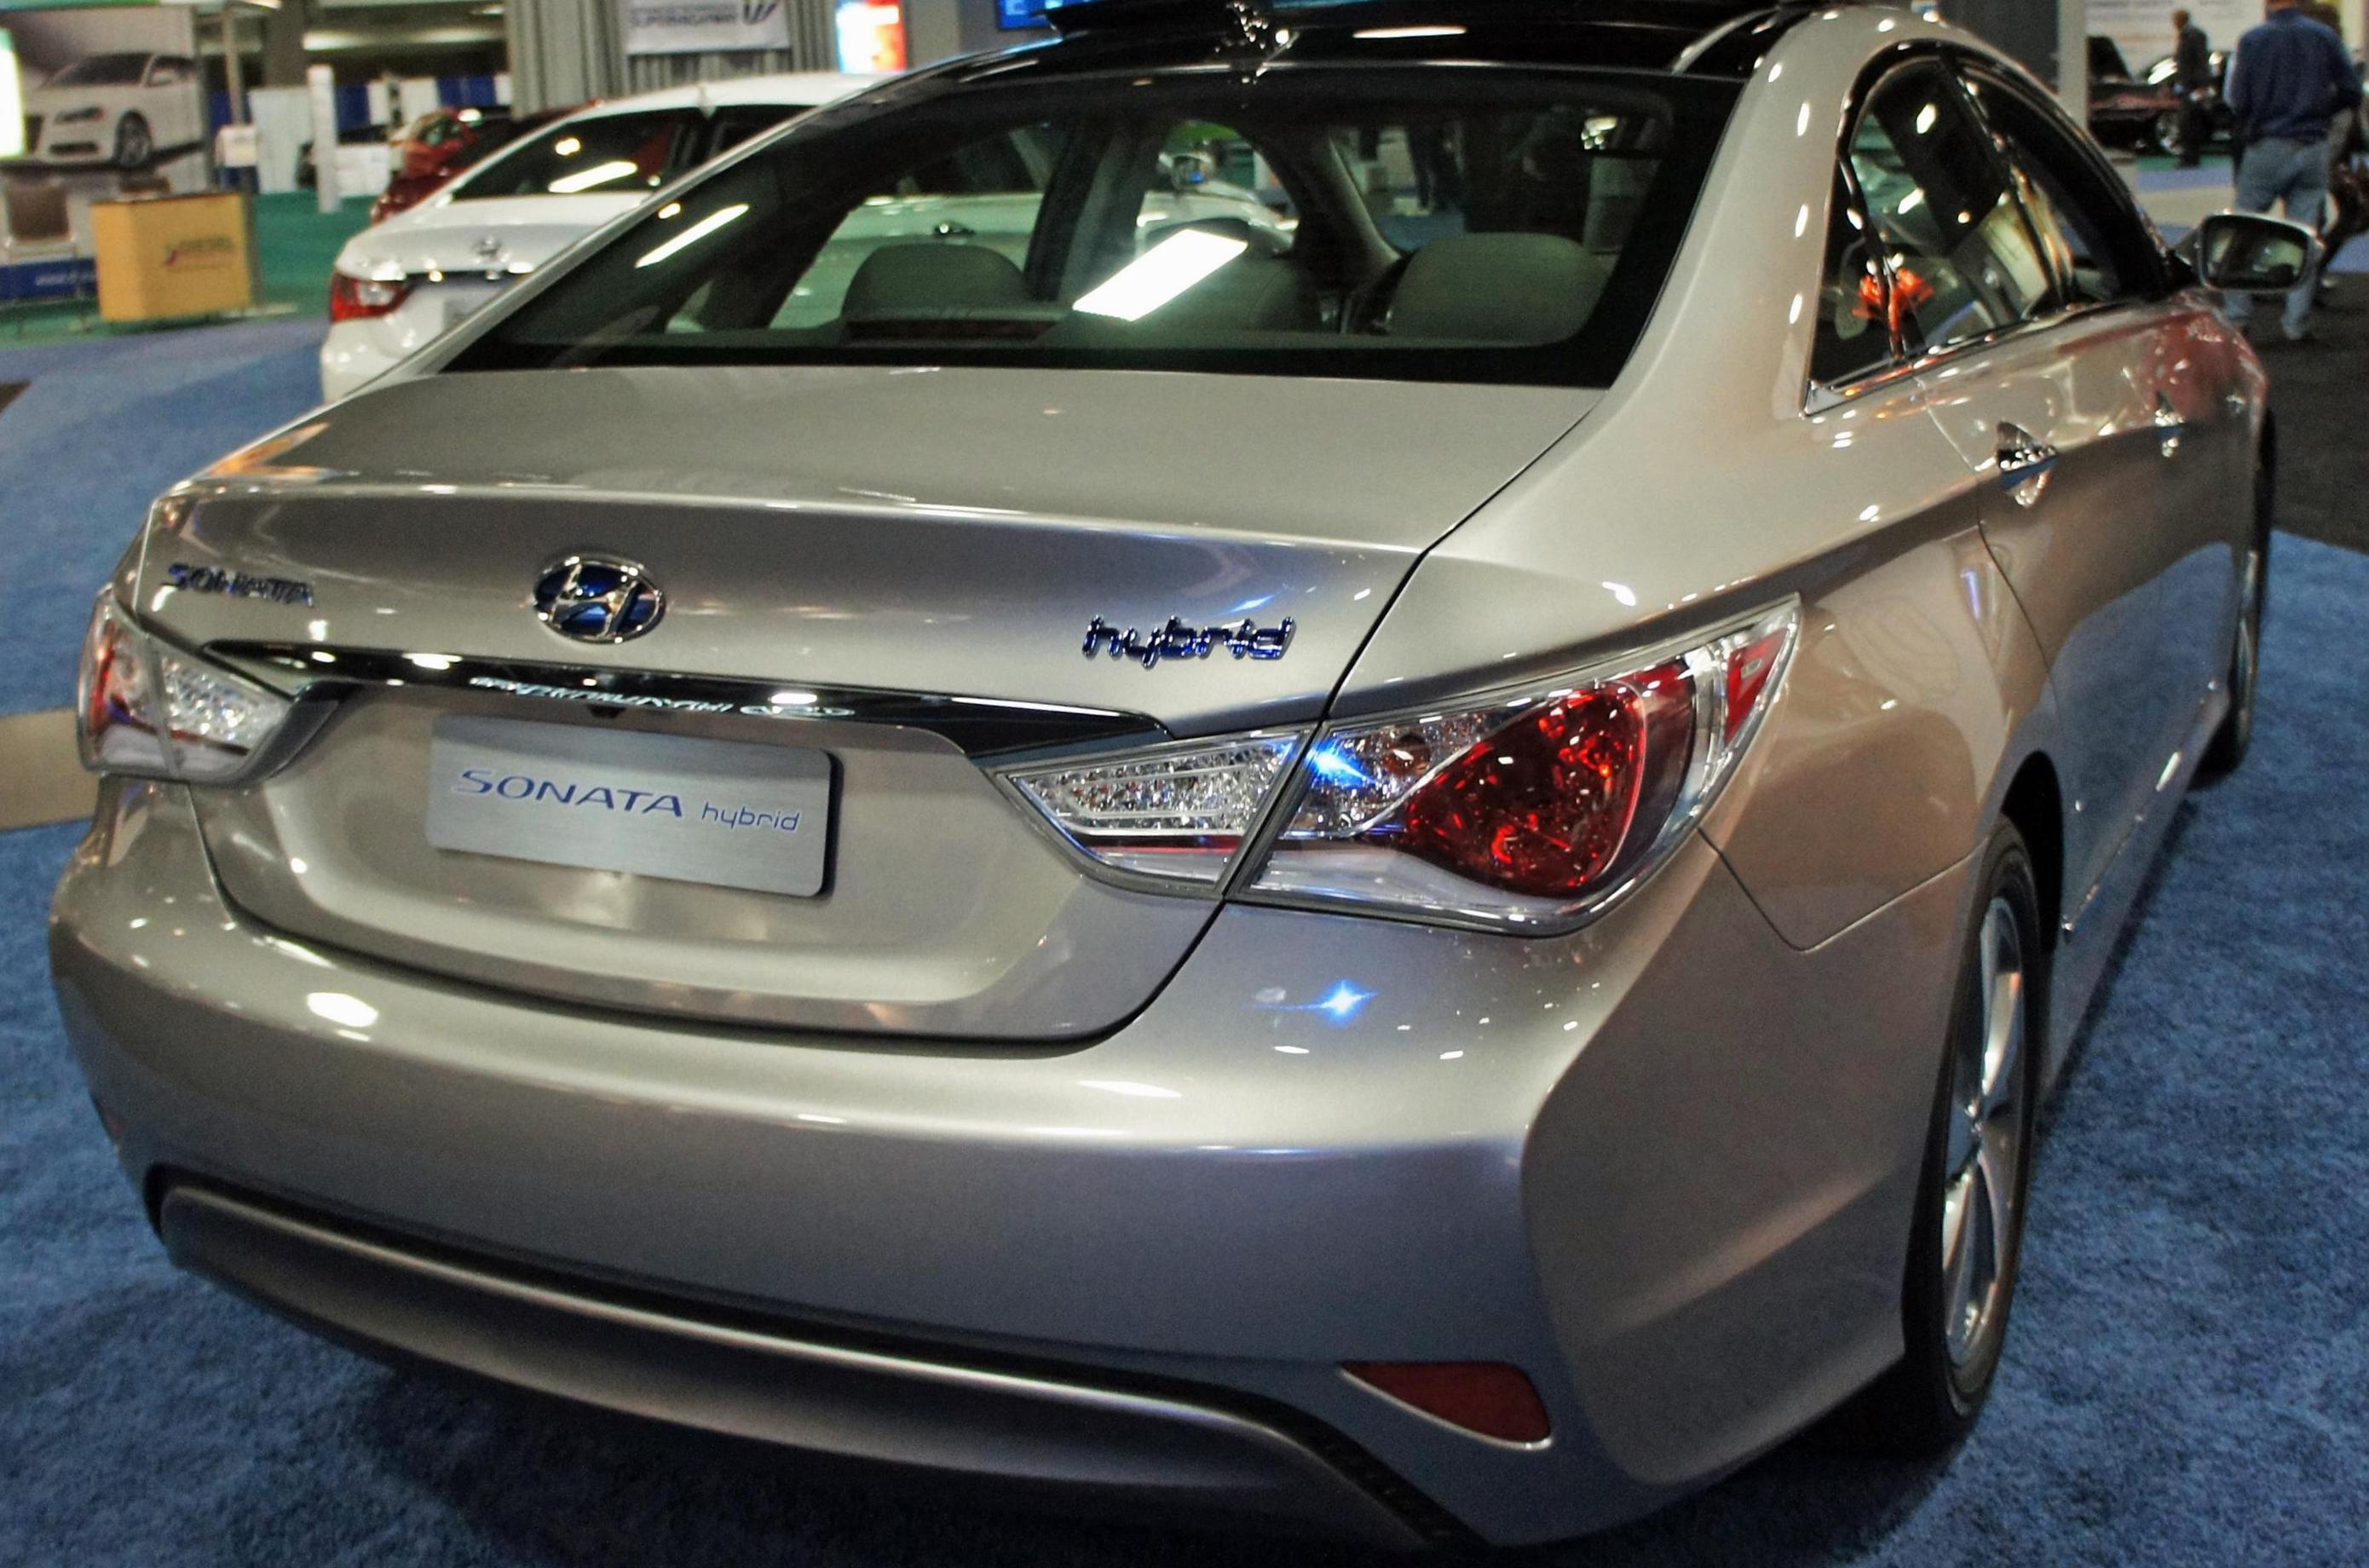 Sonata Hybrid Hyundai reviews 2011